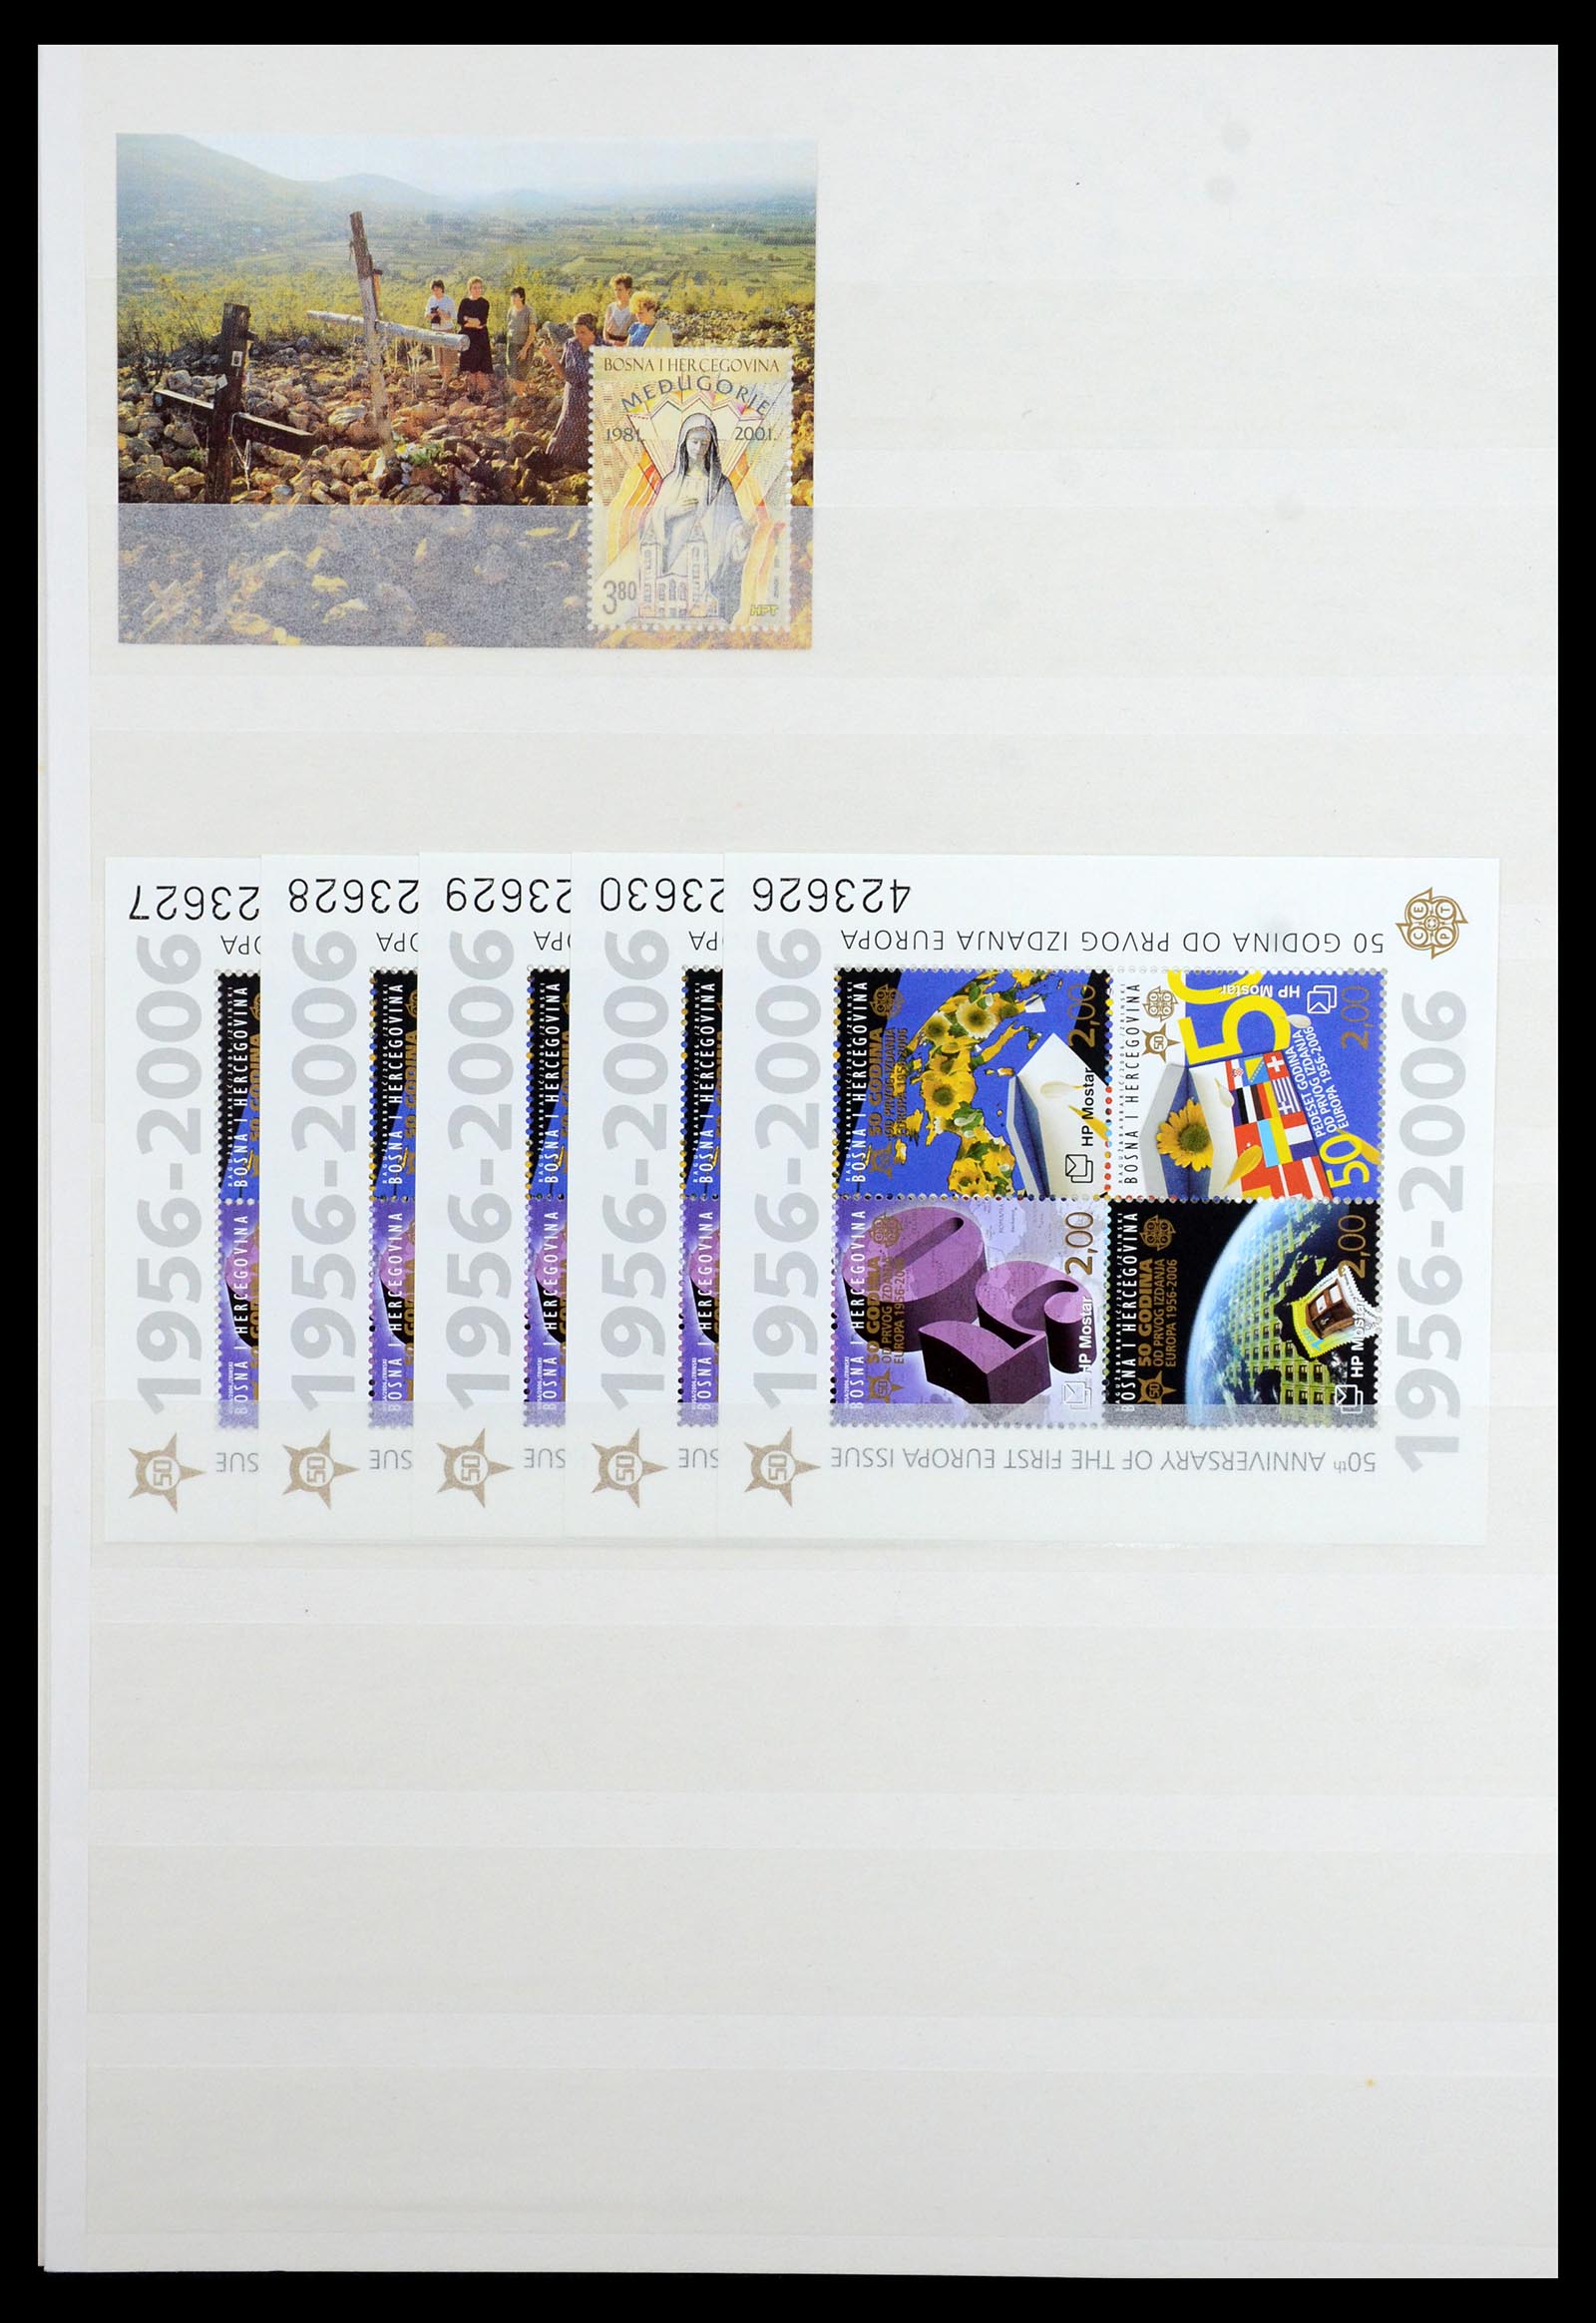 36461 060 - Stamp collection 36461 Slovenia, Croatia and Bosnia-Herzegovina MNH 1991